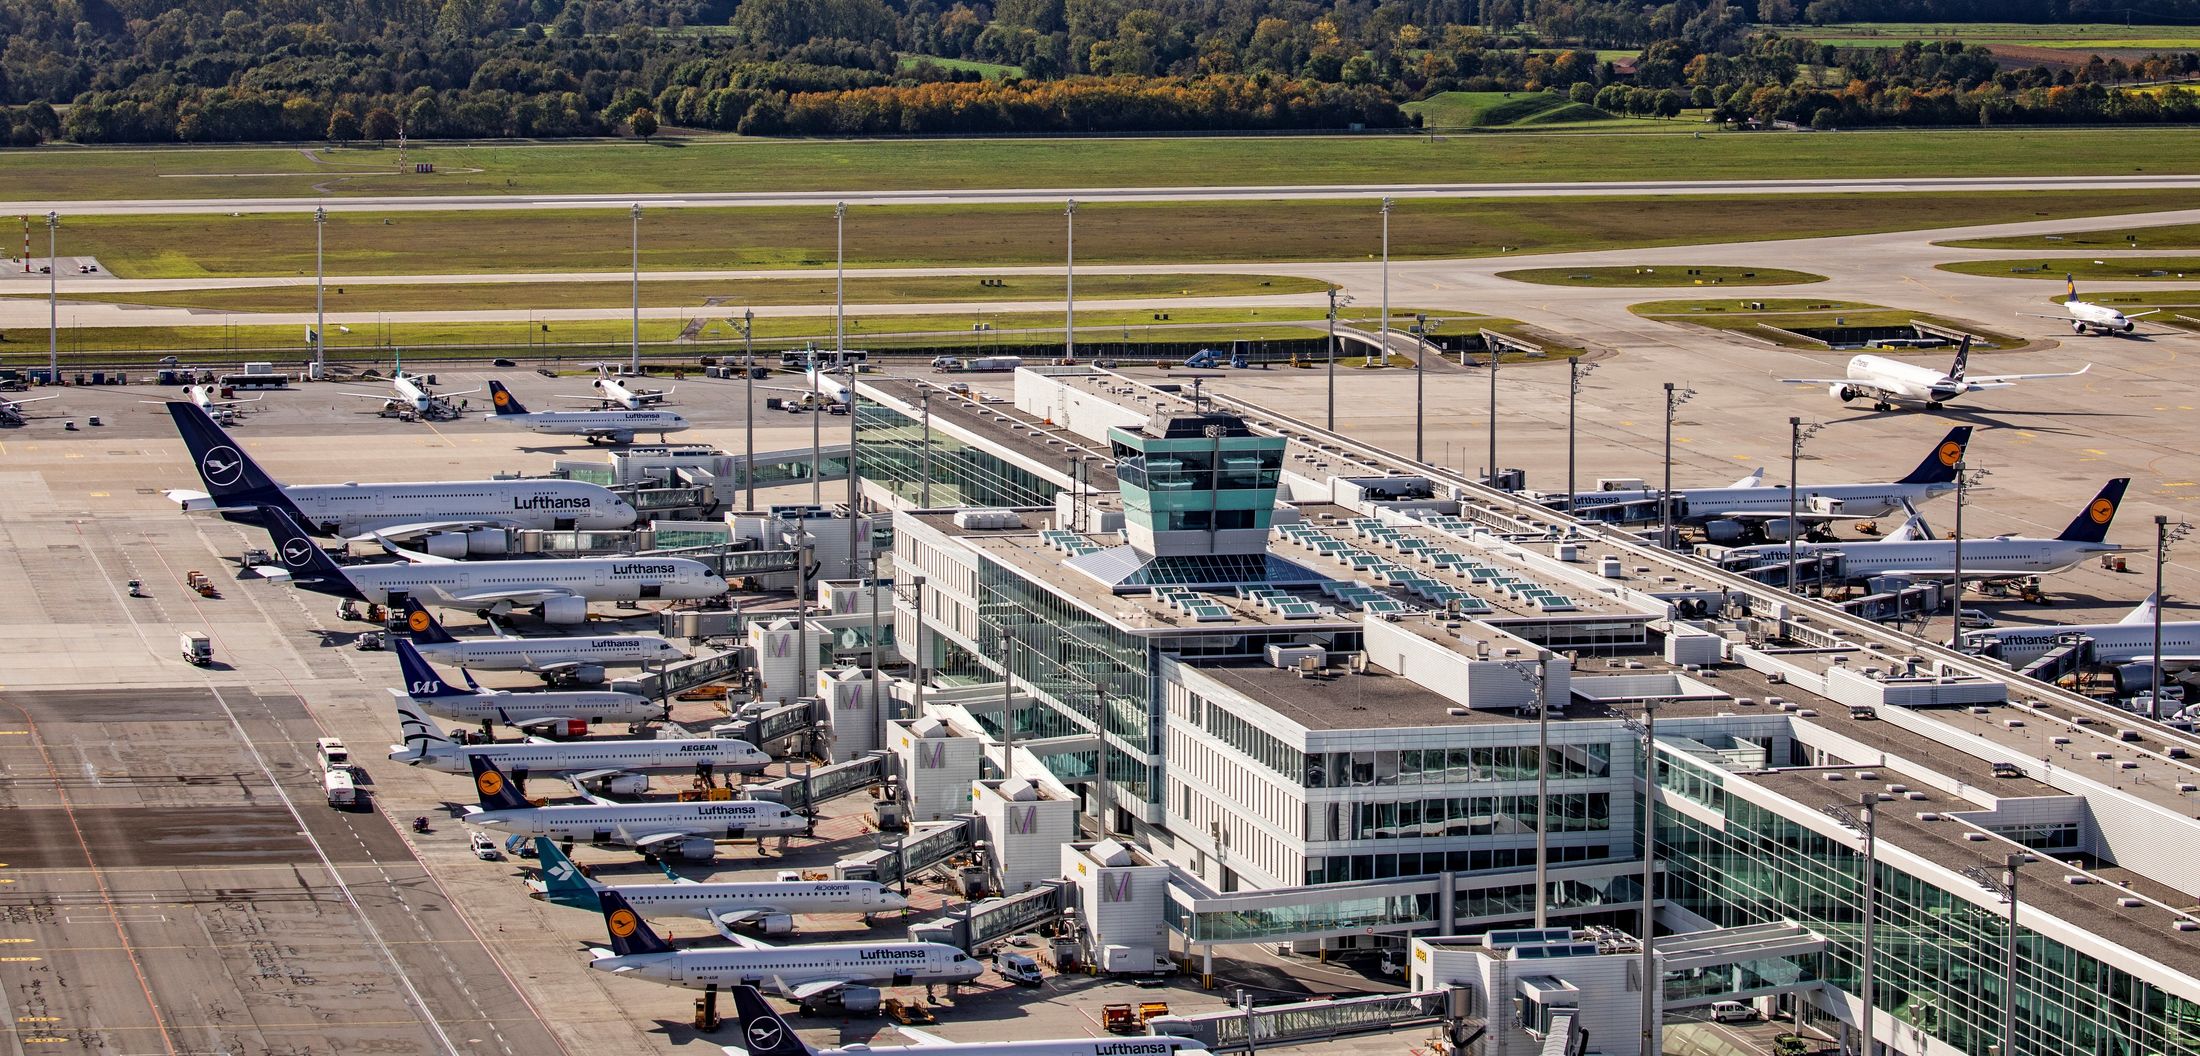 Satellitenterminal Flughafen München 